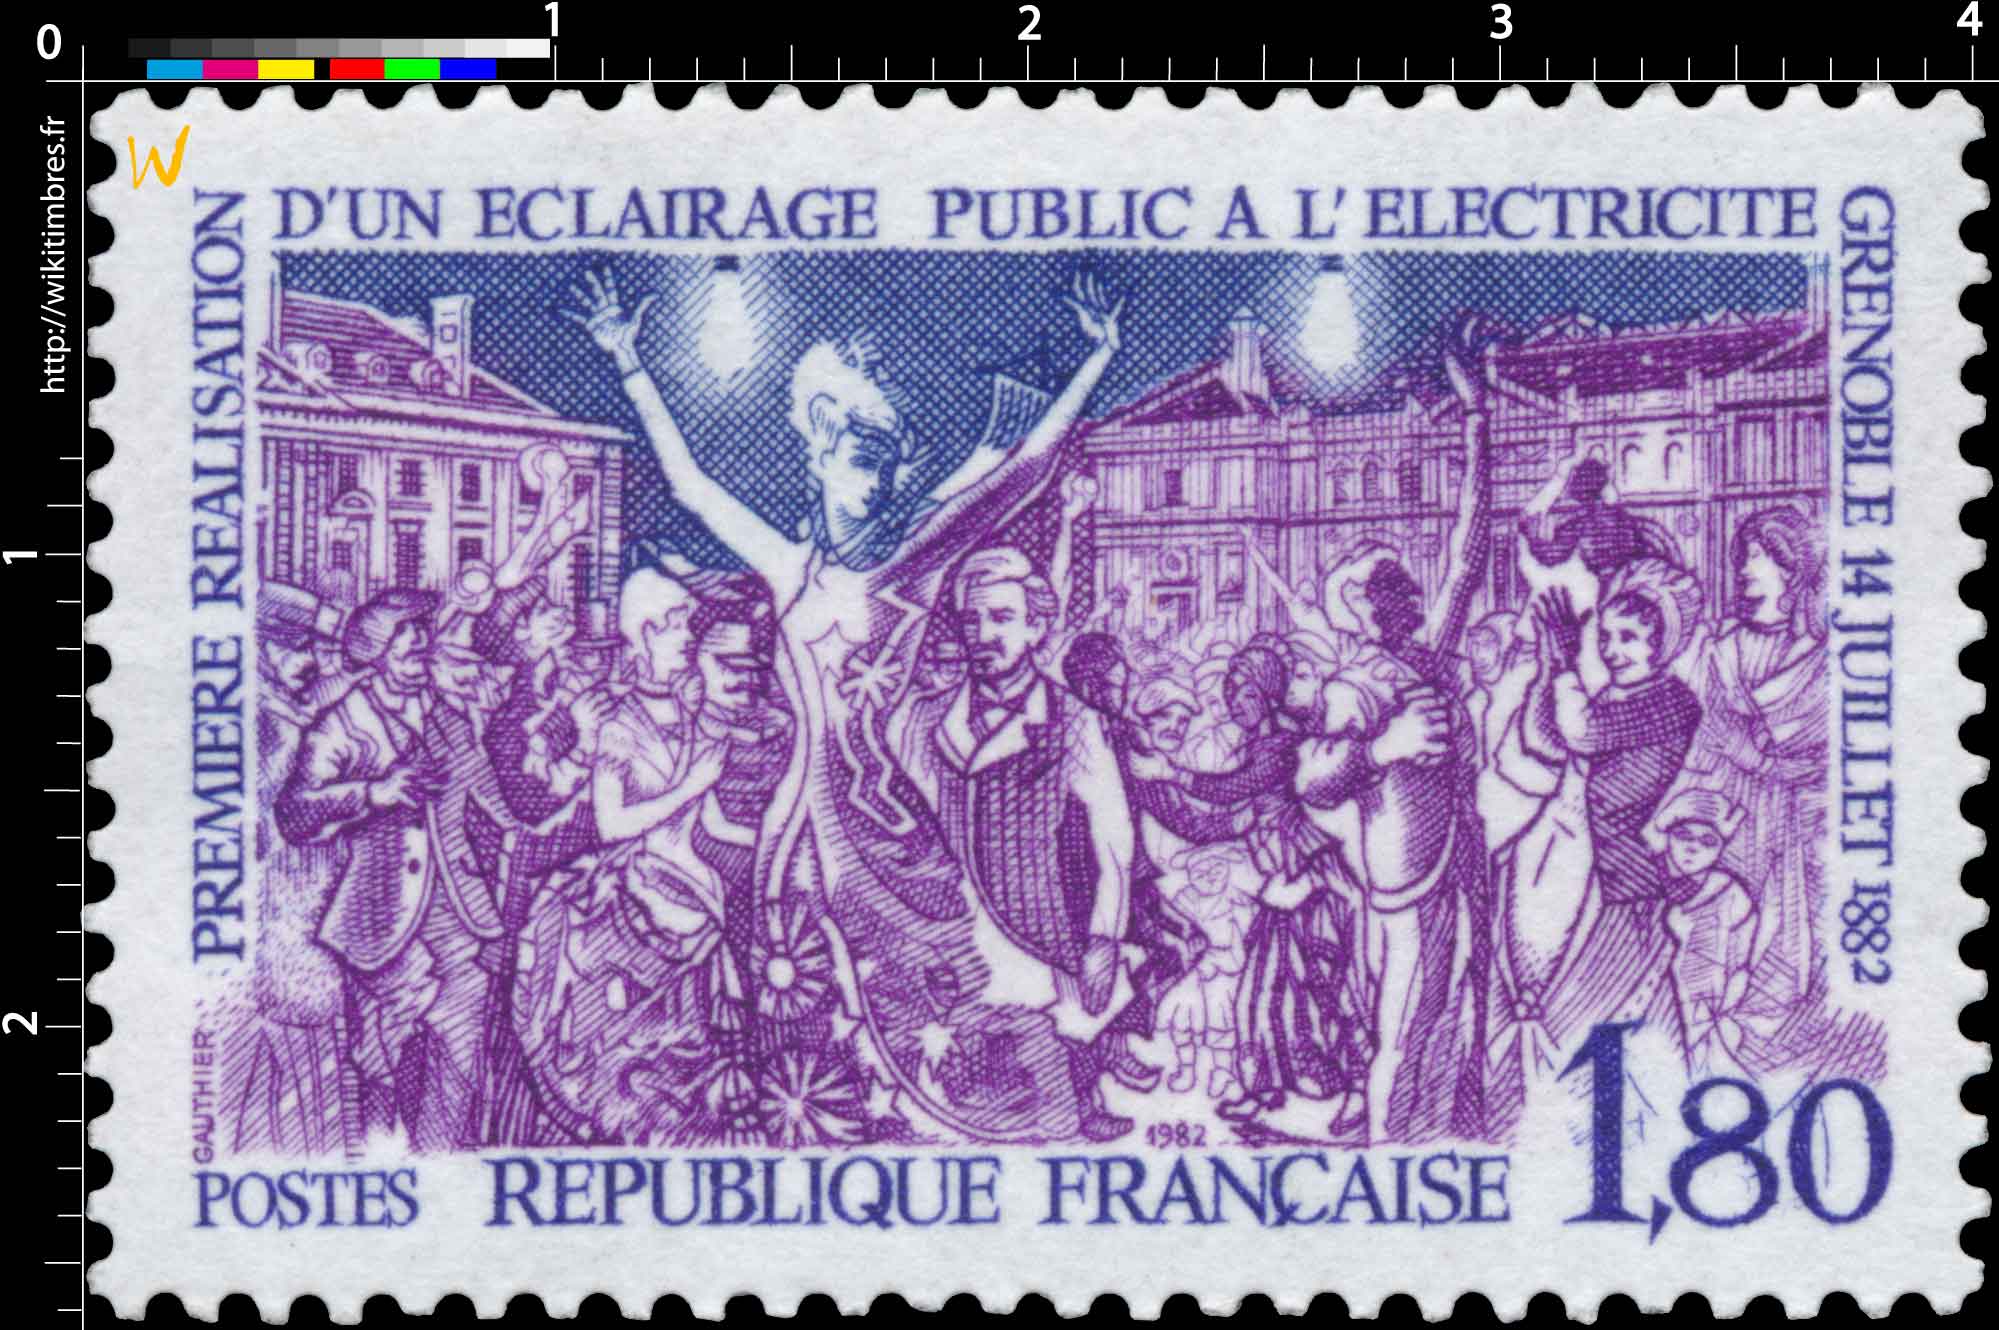 1982 PREMIÈRE RÉALISATION D'UN ÉCLAIRAGE PUBLIC À L'ÉLECTRICITÉ GRENOBLE 14 JUILLET 1882